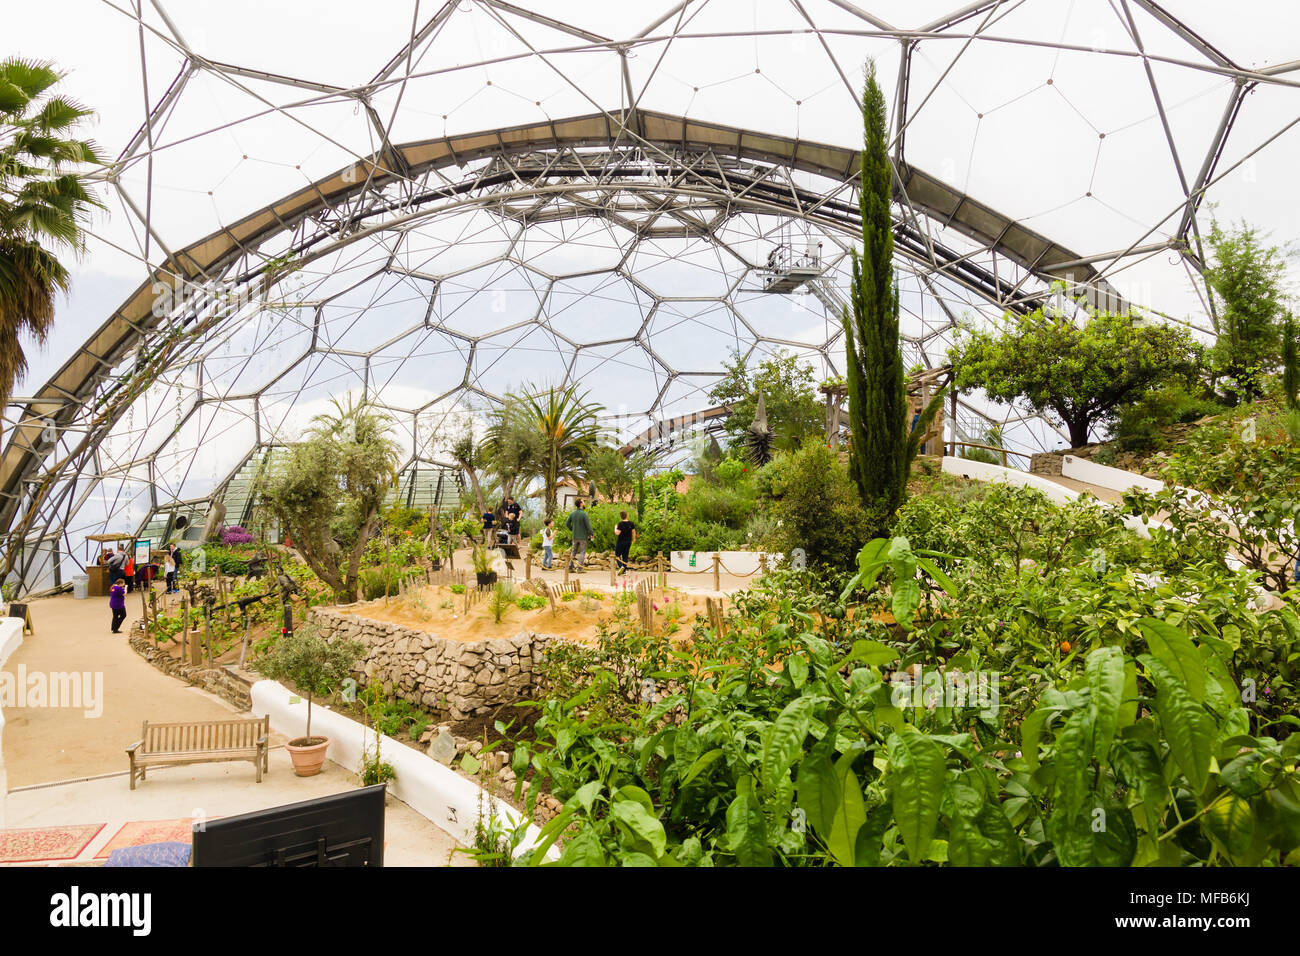 L'Eden Project biome méditerranéen une attraction touristique populaire construit dans une ancienne carrière avec des jardins tropicaux situé dans les dômes géant a ouvert ses portes en 2001 Banque D'Images